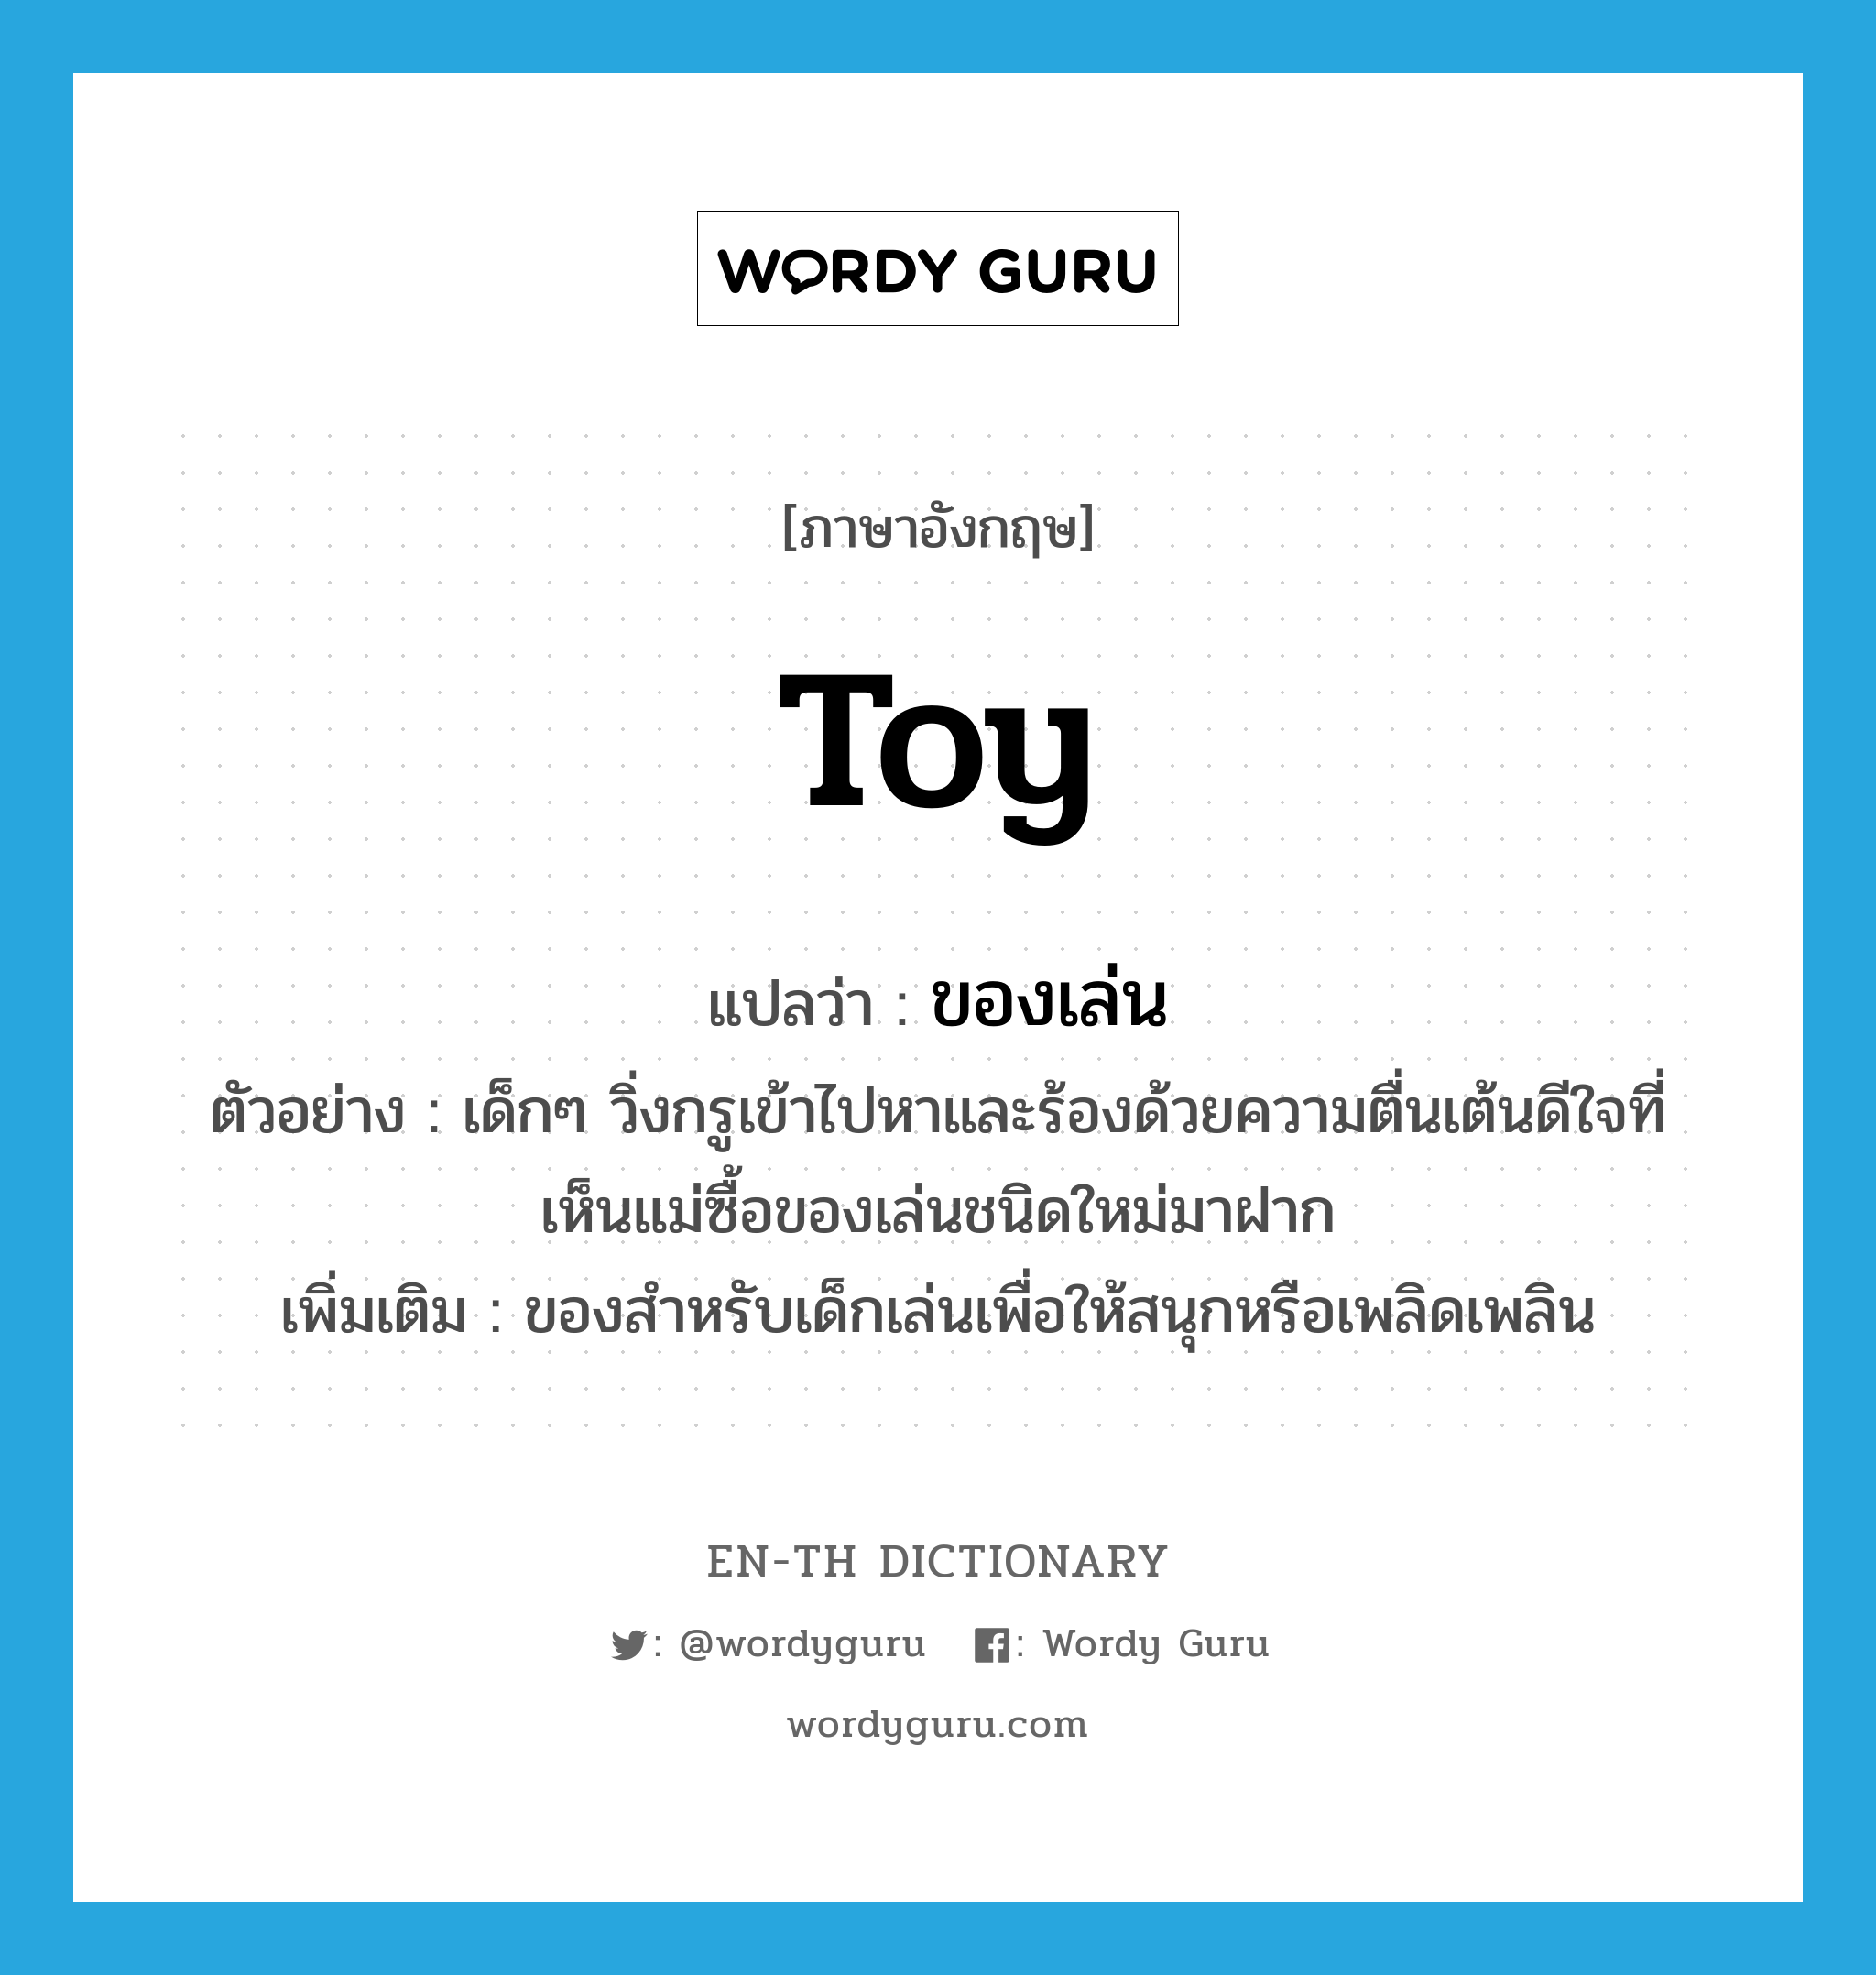 toy แปลว่า?, คำศัพท์ภาษาอังกฤษ toy แปลว่า ของเล่น ประเภท N ตัวอย่าง เด็กๆ วิ่งกรูเข้าไปหาและร้องด้วยความตื่นเต้นดีใจที่เห็นแม่ซื้อของเล่นชนิดใหม่มาฝาก เพิ่มเติม ของสำหรับเด็กเล่นเพื่อให้สนุกหรือเพลิดเพลิน หมวด N